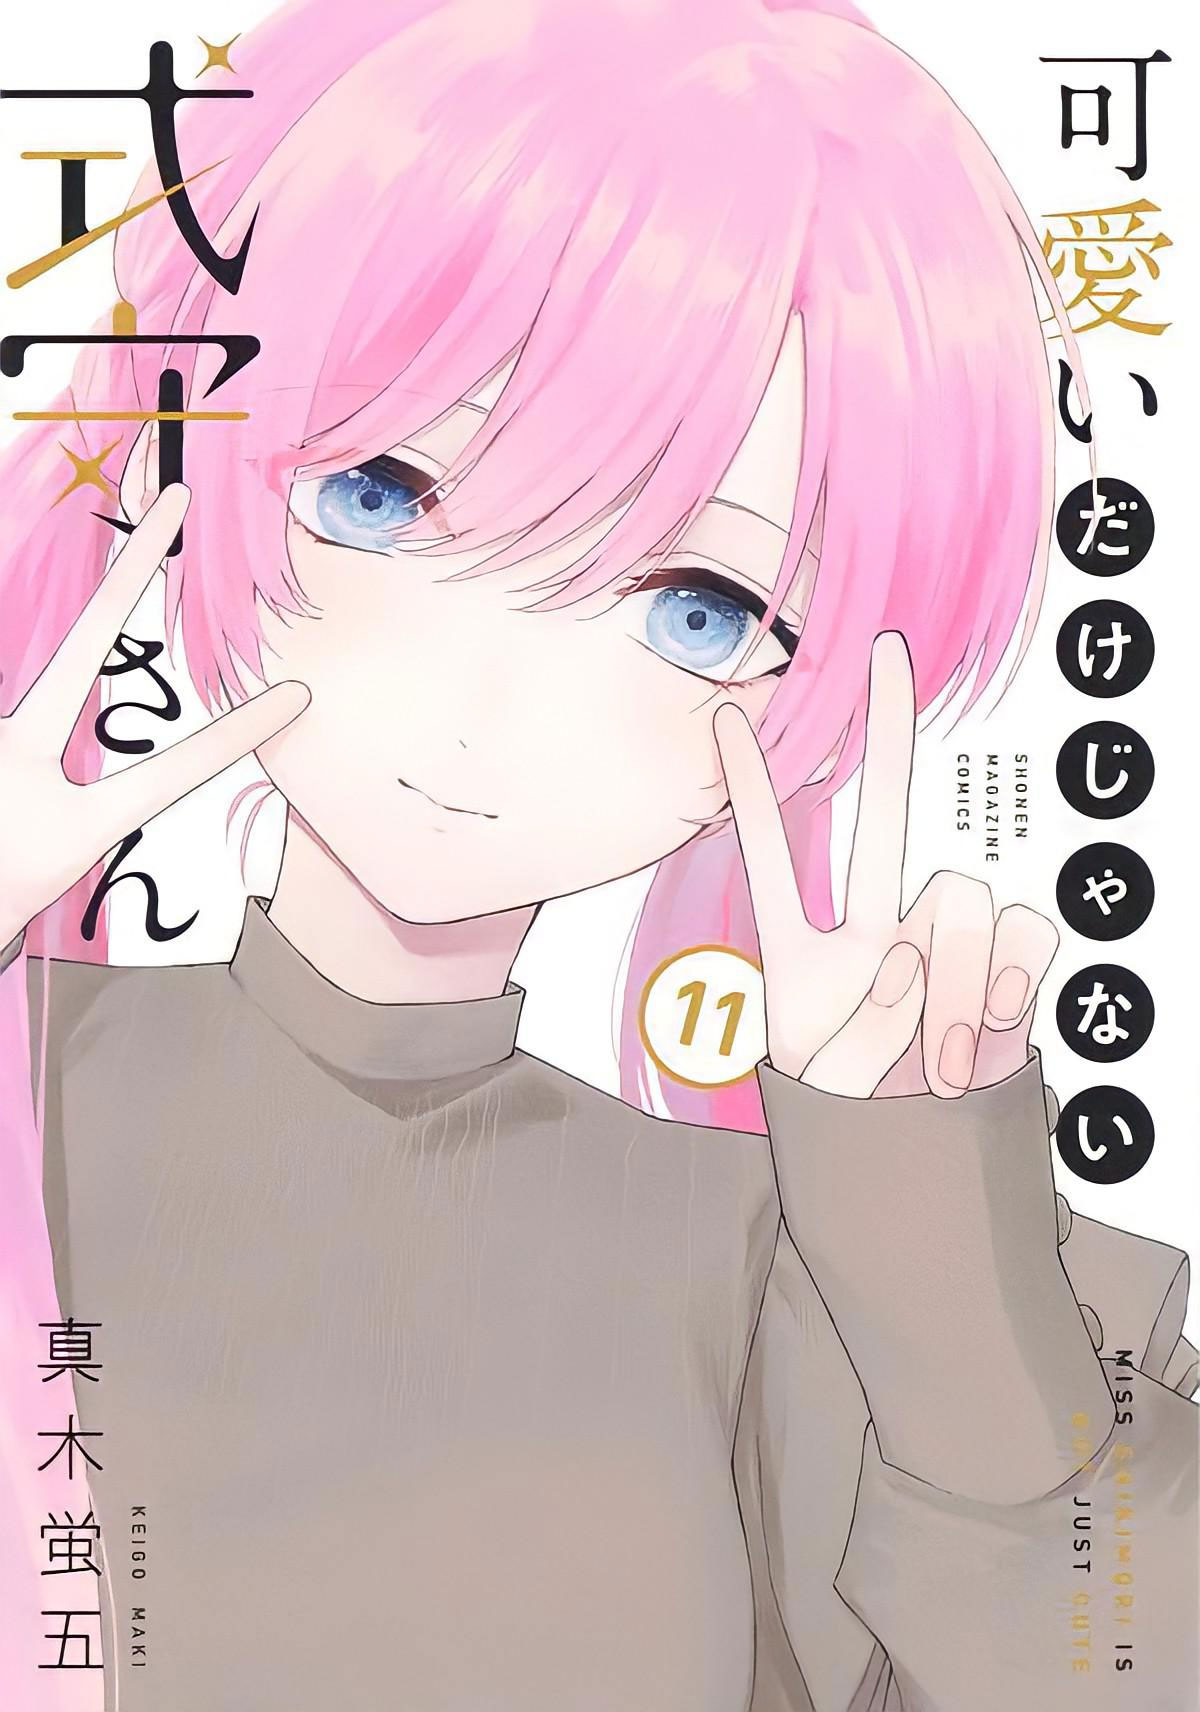 El manga Kawaii dake ja Nai Shikimori-san supero las 2.6 millones de copias